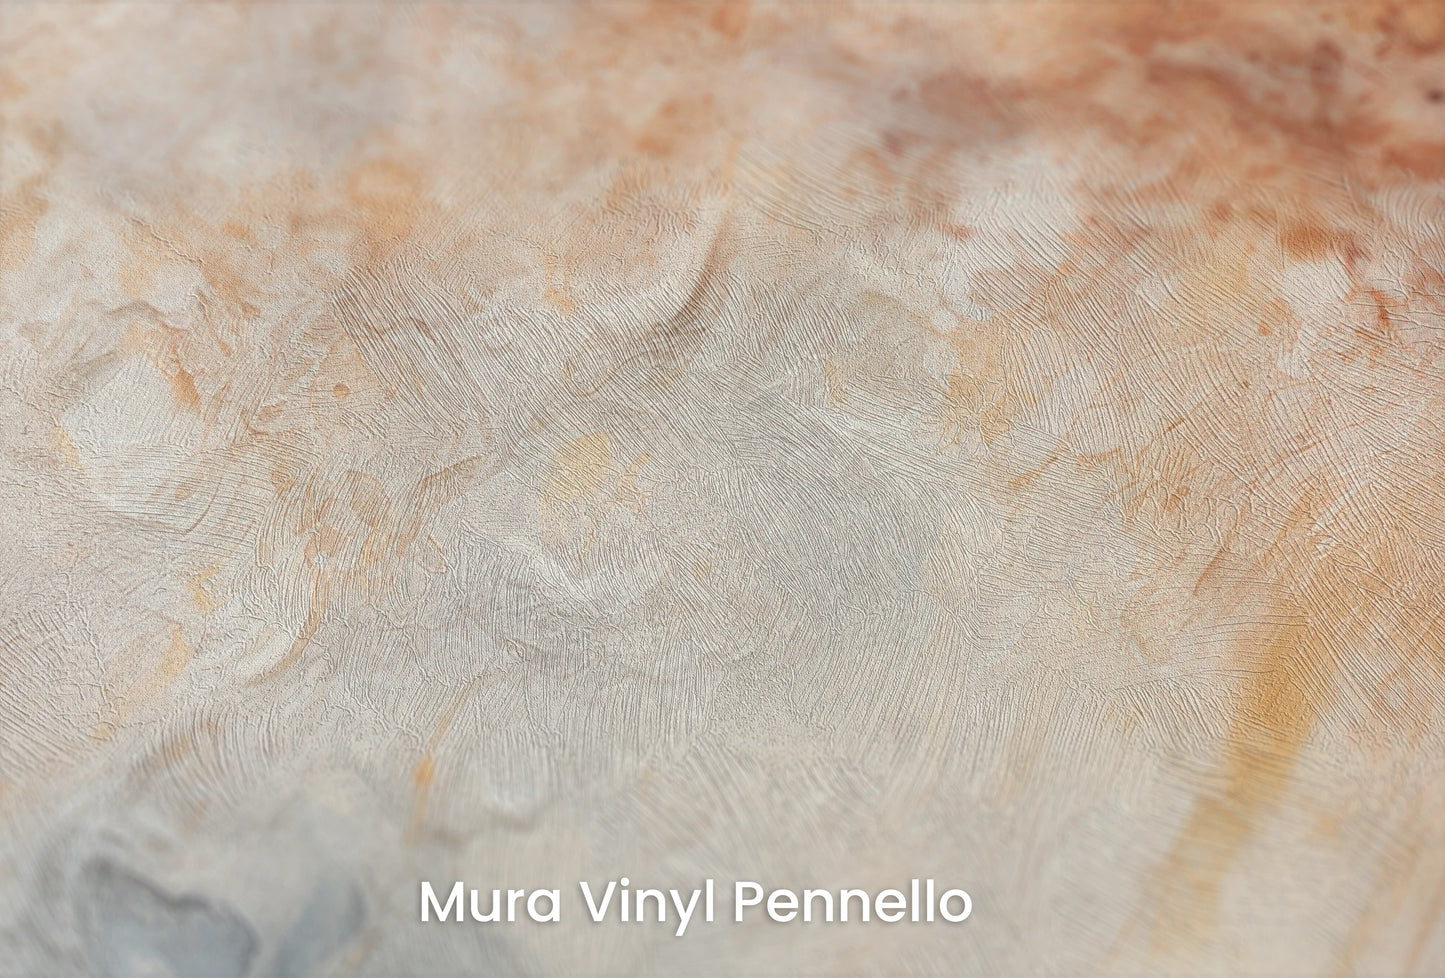 Zbliżenie na artystyczną fototapetę o nazwie Jupiter's Canvas na podłożu Mura Vinyl Pennello - faktura pociągnięć pędzla malarskiego.